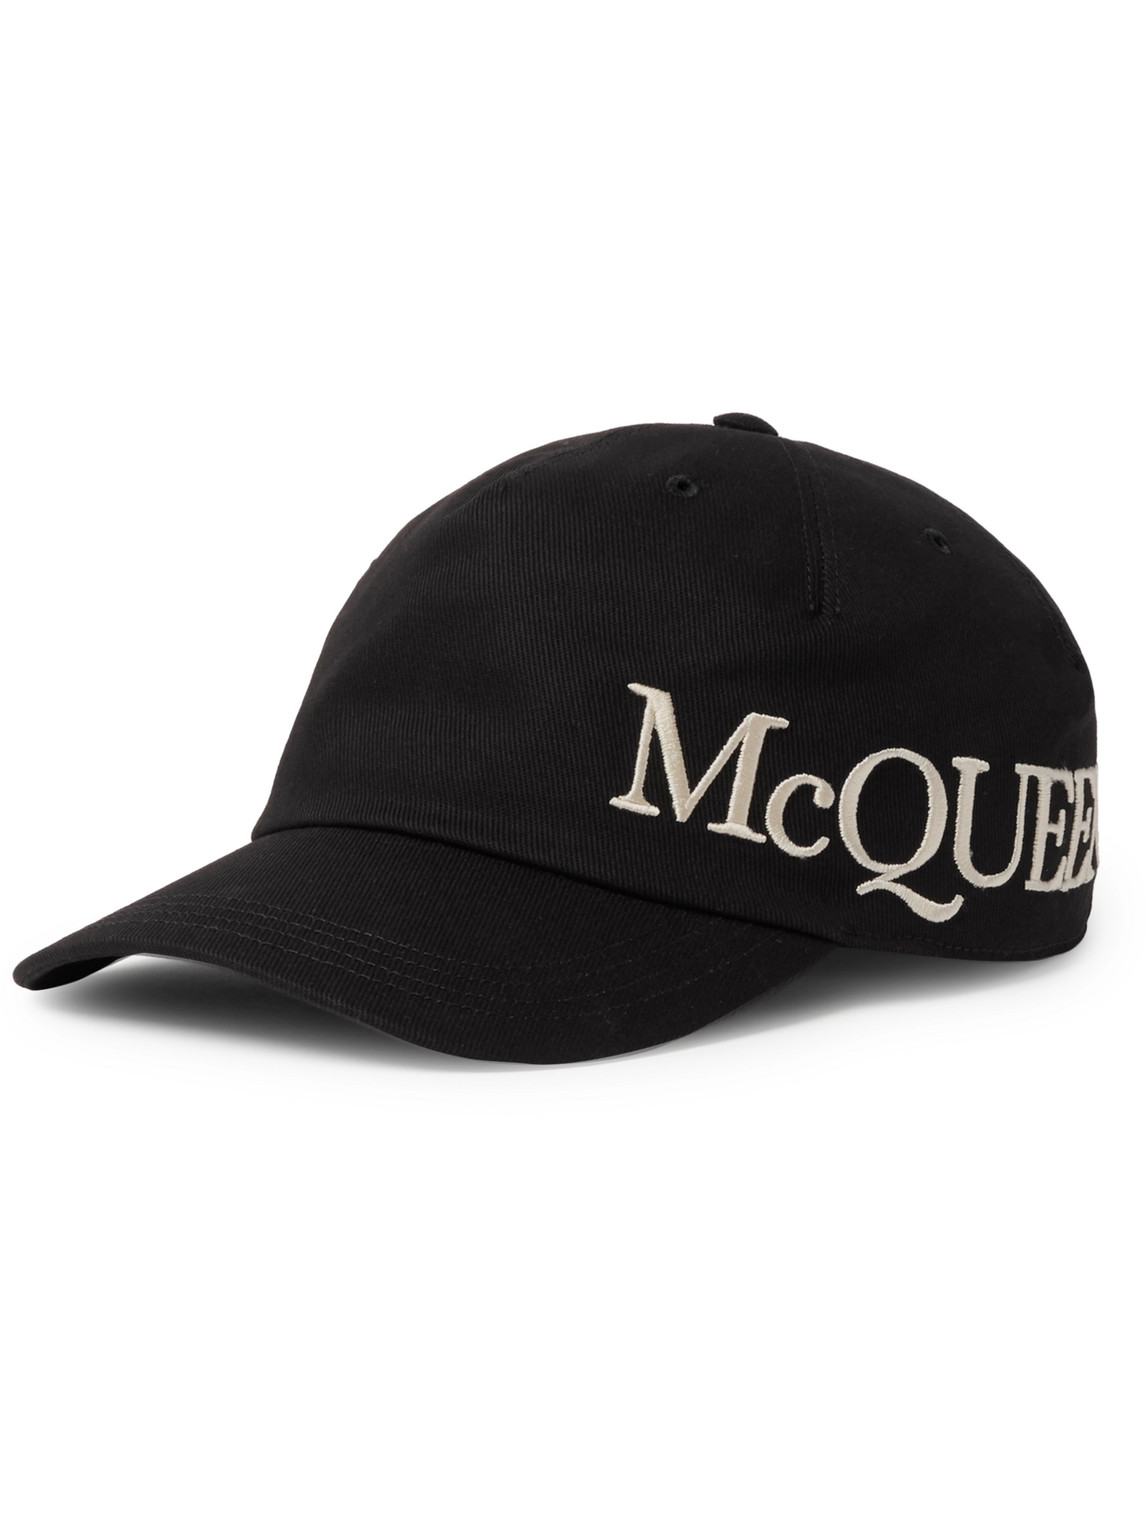 ALEXANDER MCQUEEN Hats for Men | ModeSens